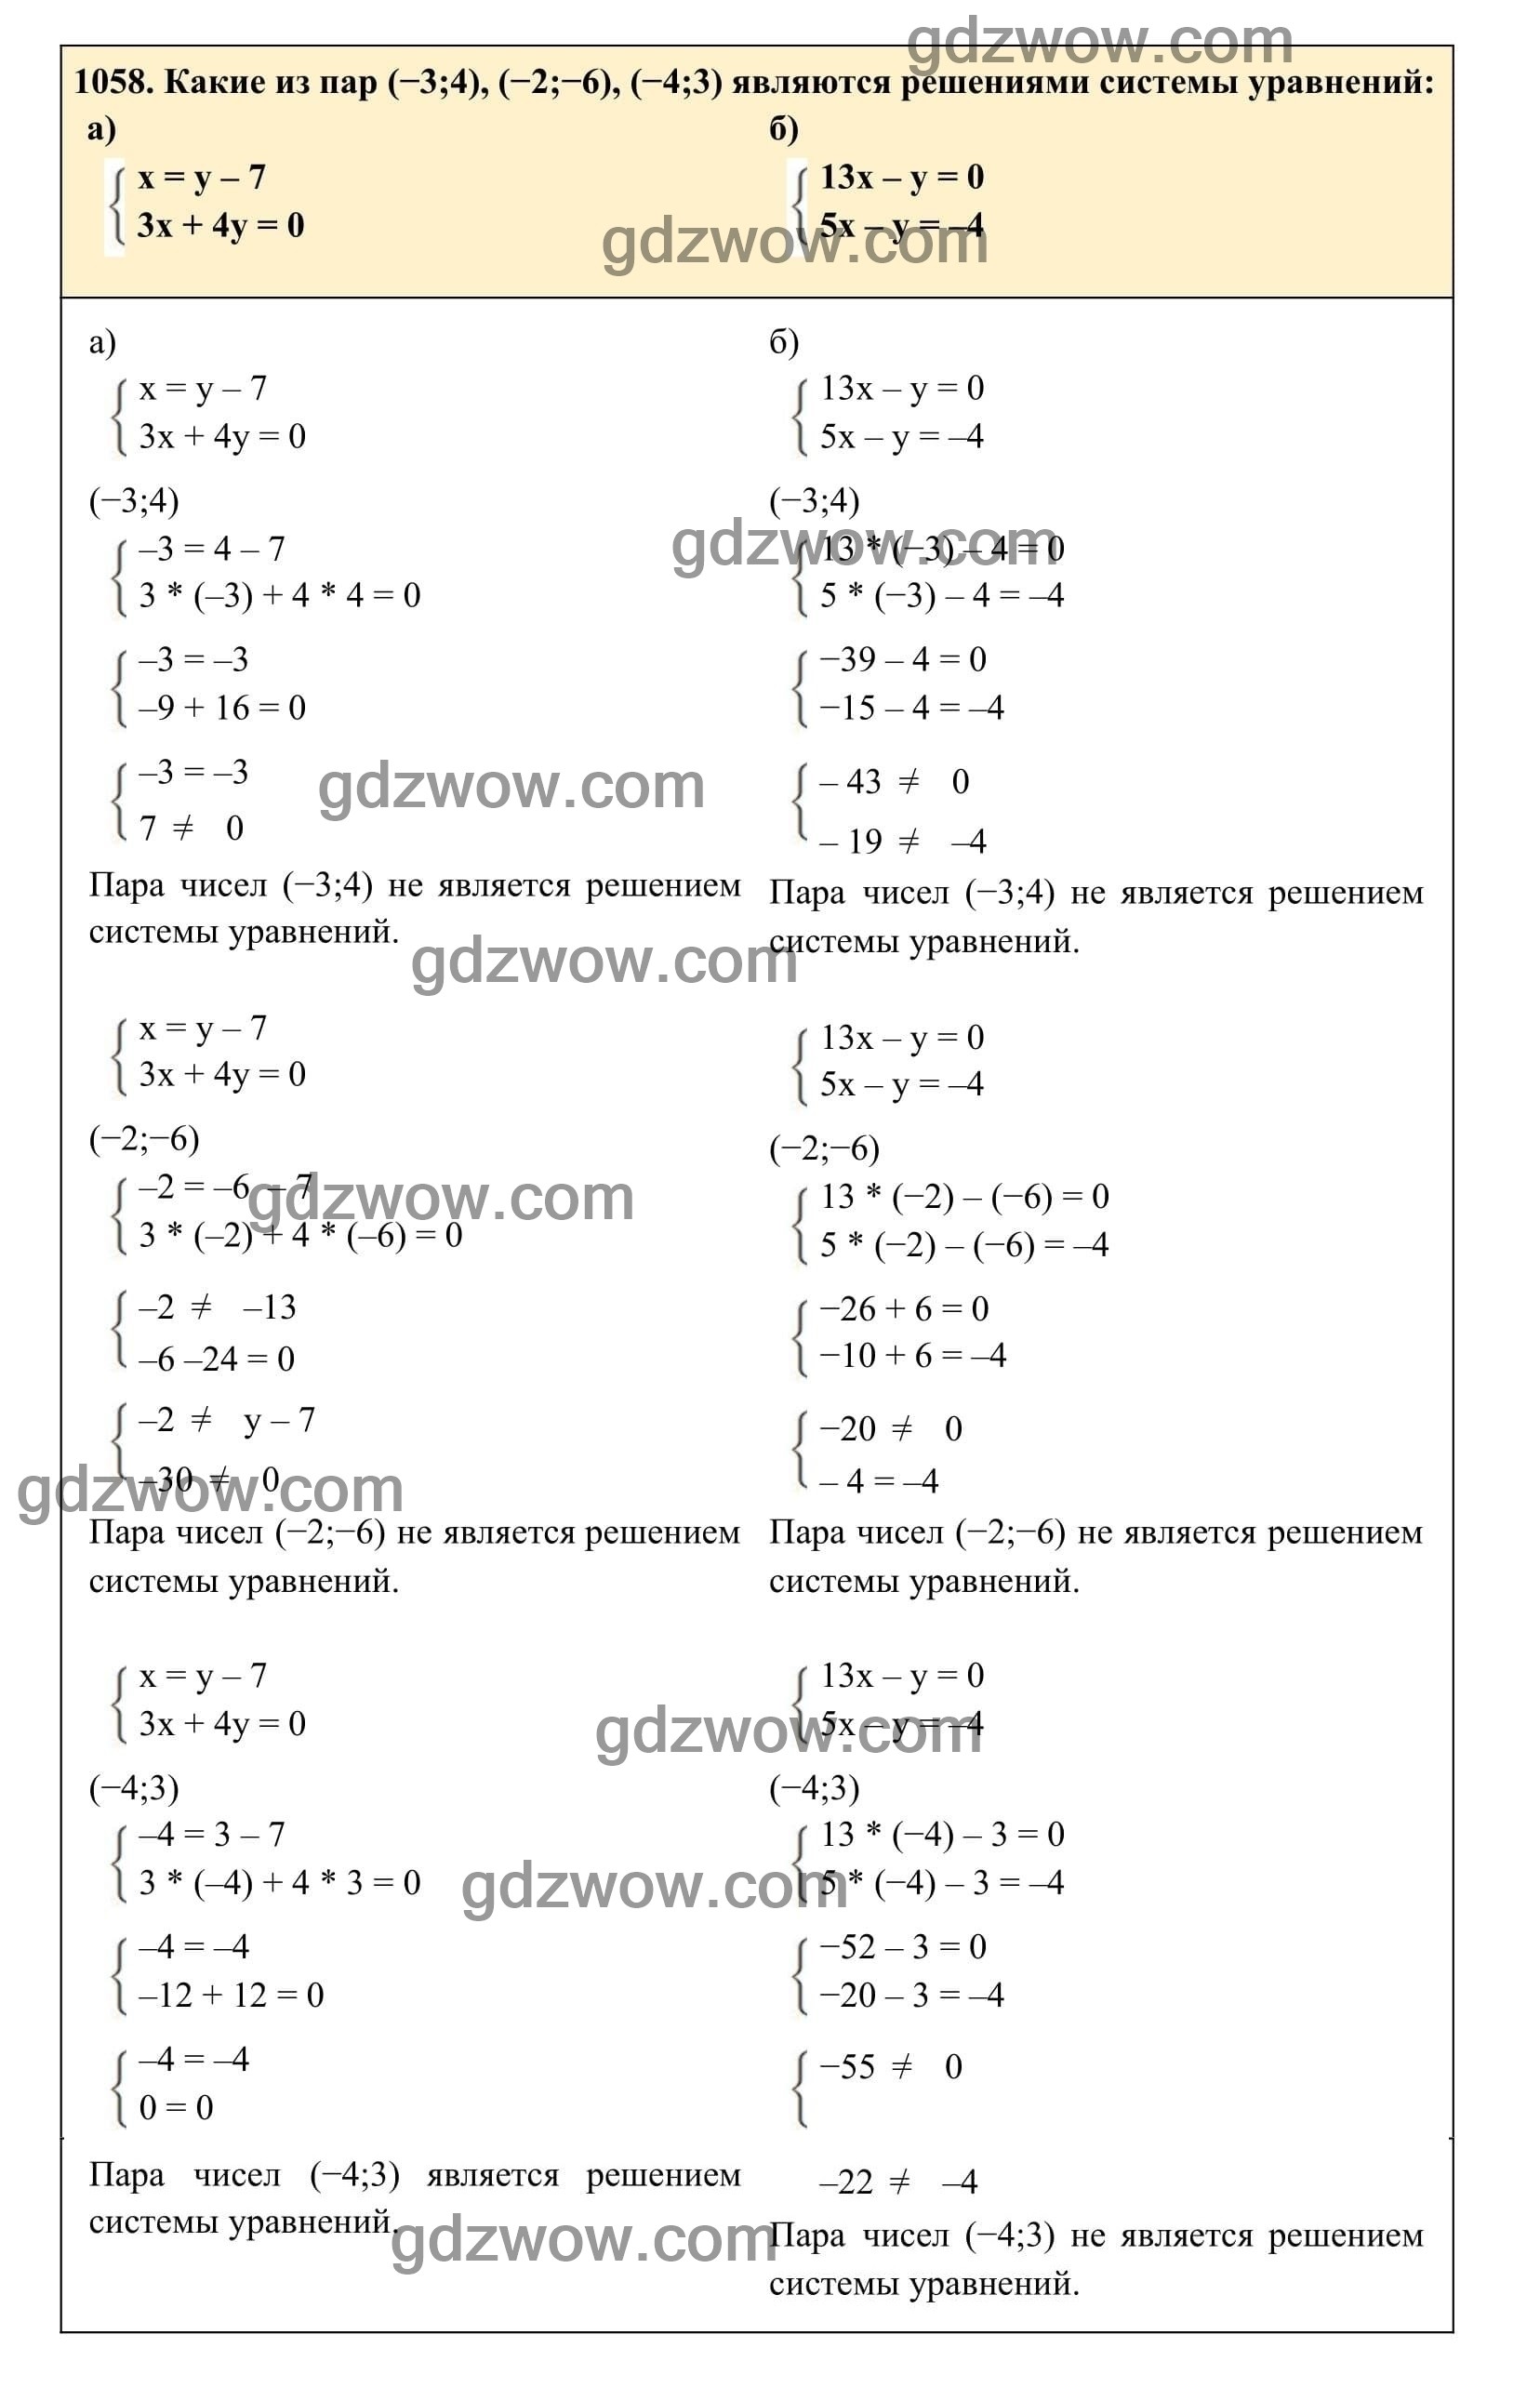 Упражнение 1058 - ГДЗ по Алгебре 7 класс Учебник Макарычев (решебник) - GDZwow